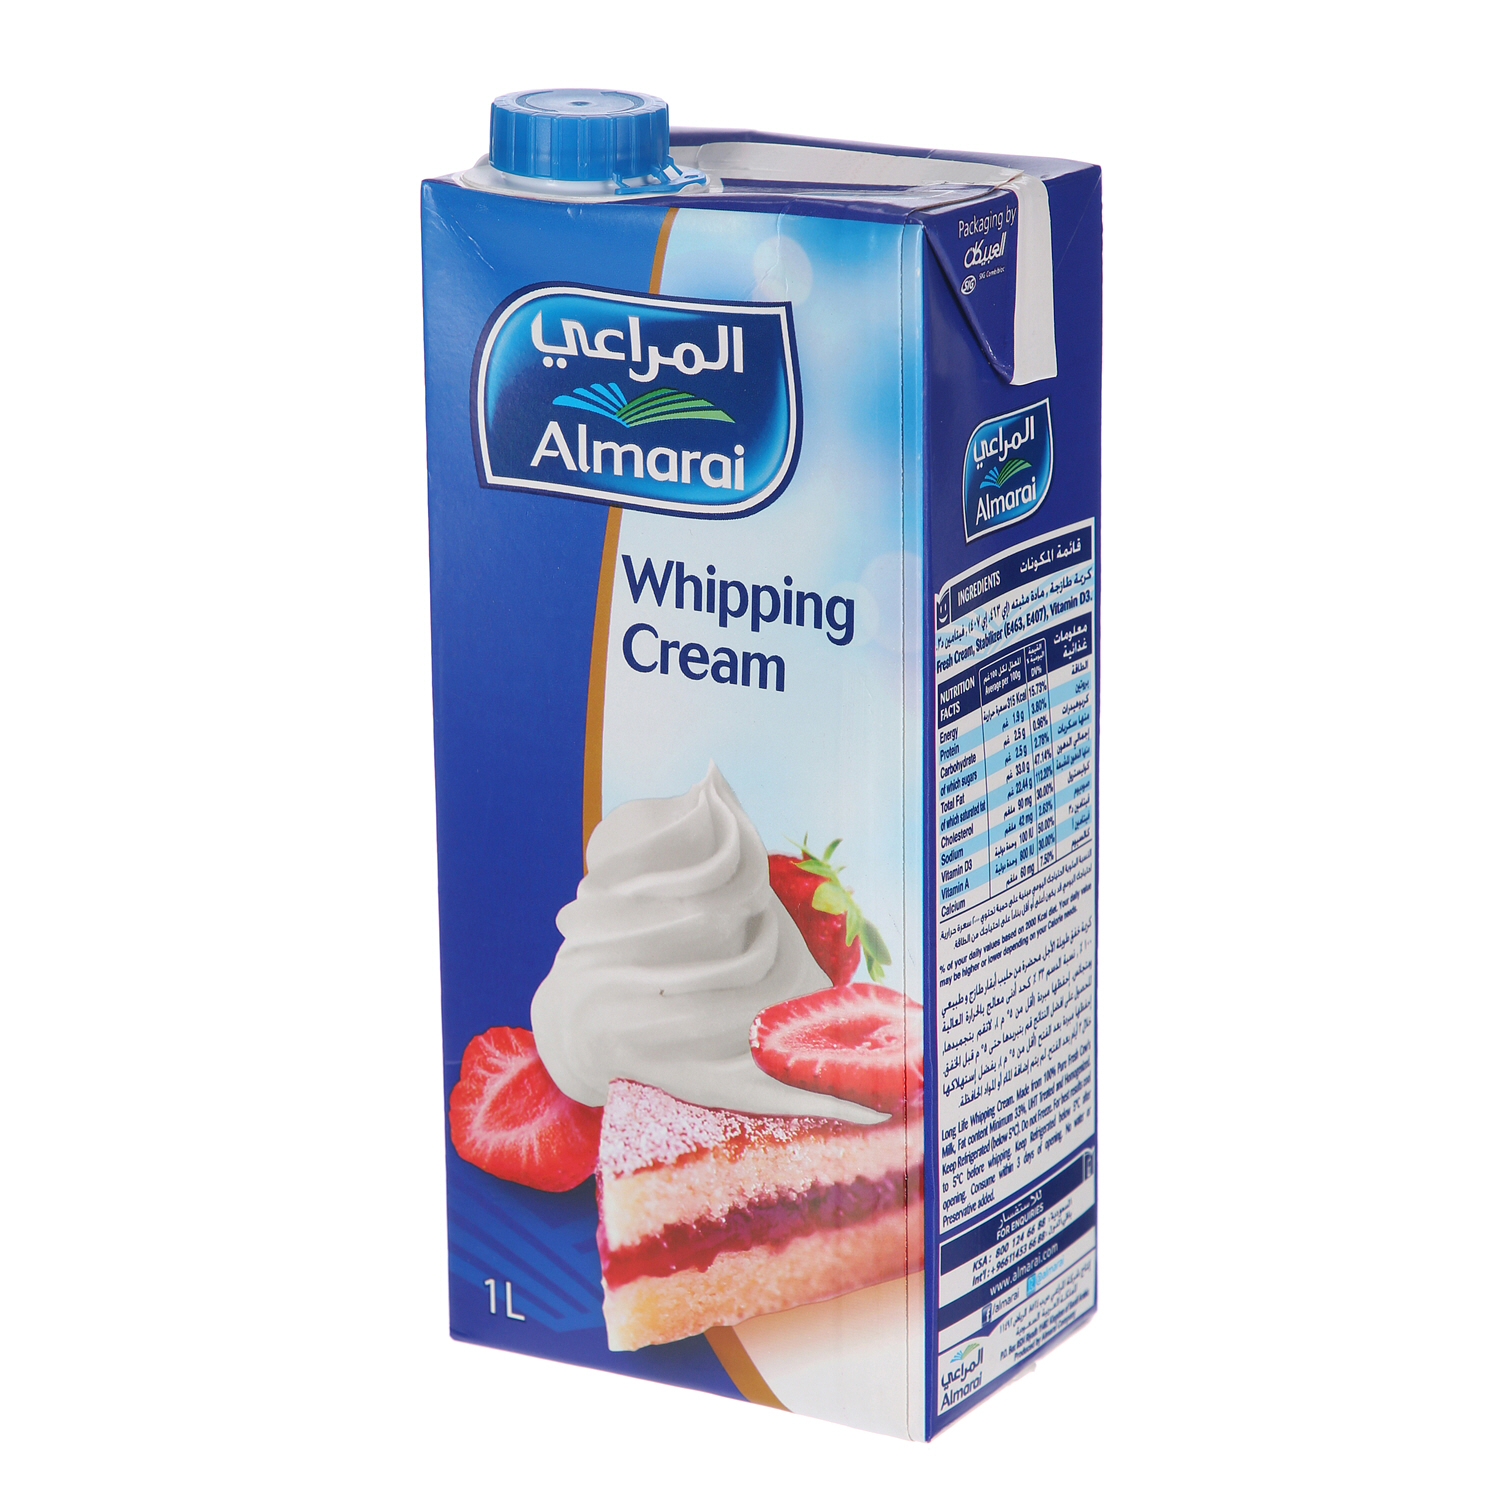 Almarai Whipping Cream Screwcap 1Ltr